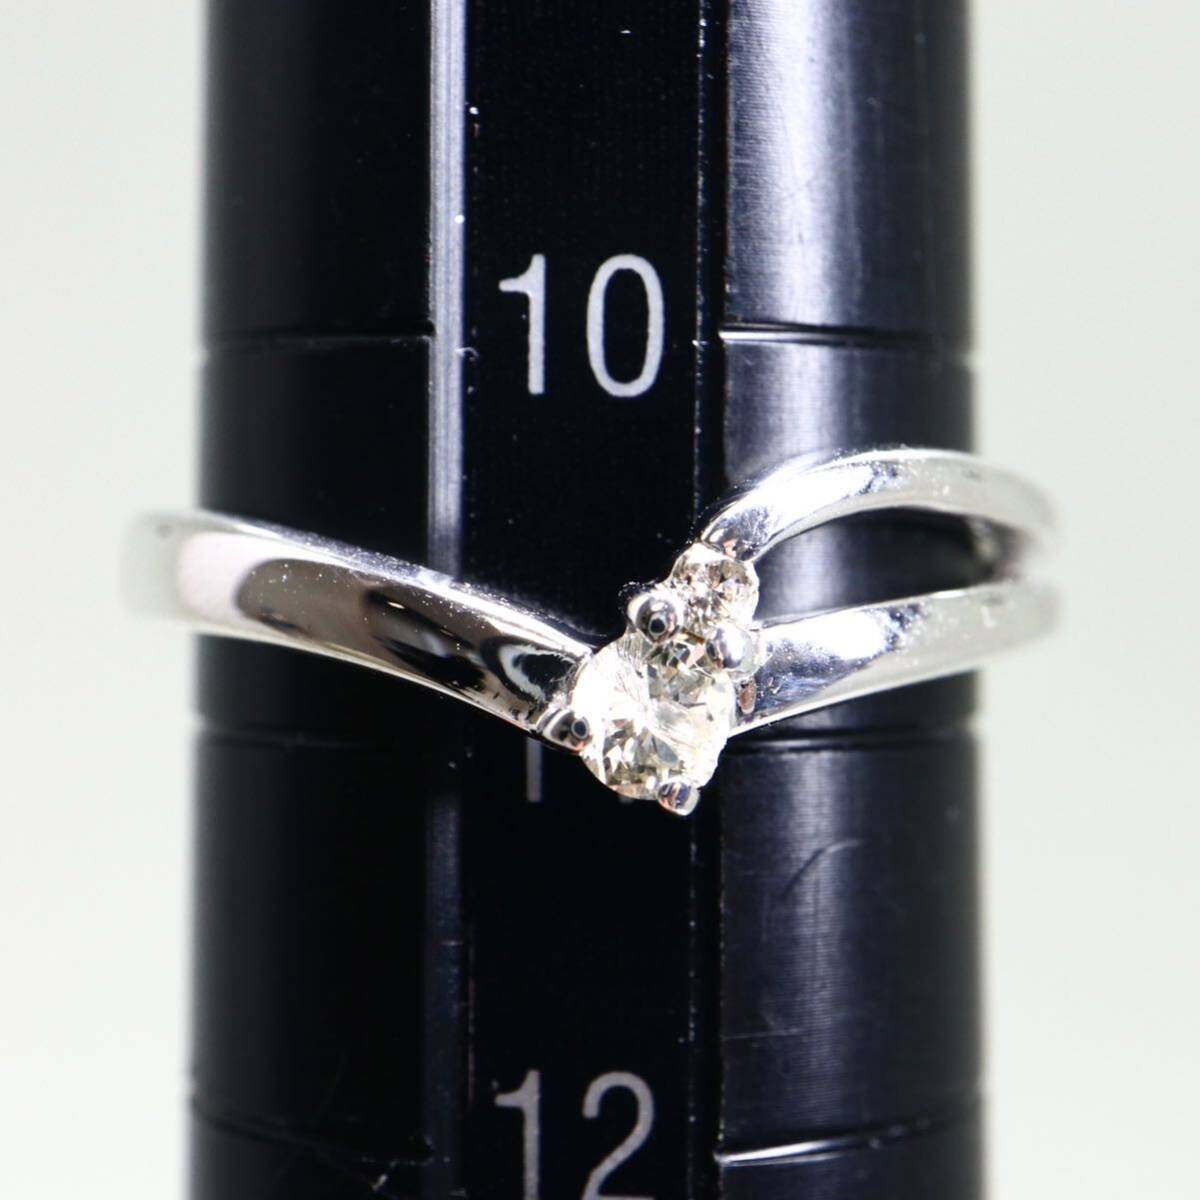 {K18WG натуральный бриллиантовое кольцо }M 2.5g 0.1ct примерно 11 номер ювелирные изделия jewelry ring кольцо diamond EB4/EB4